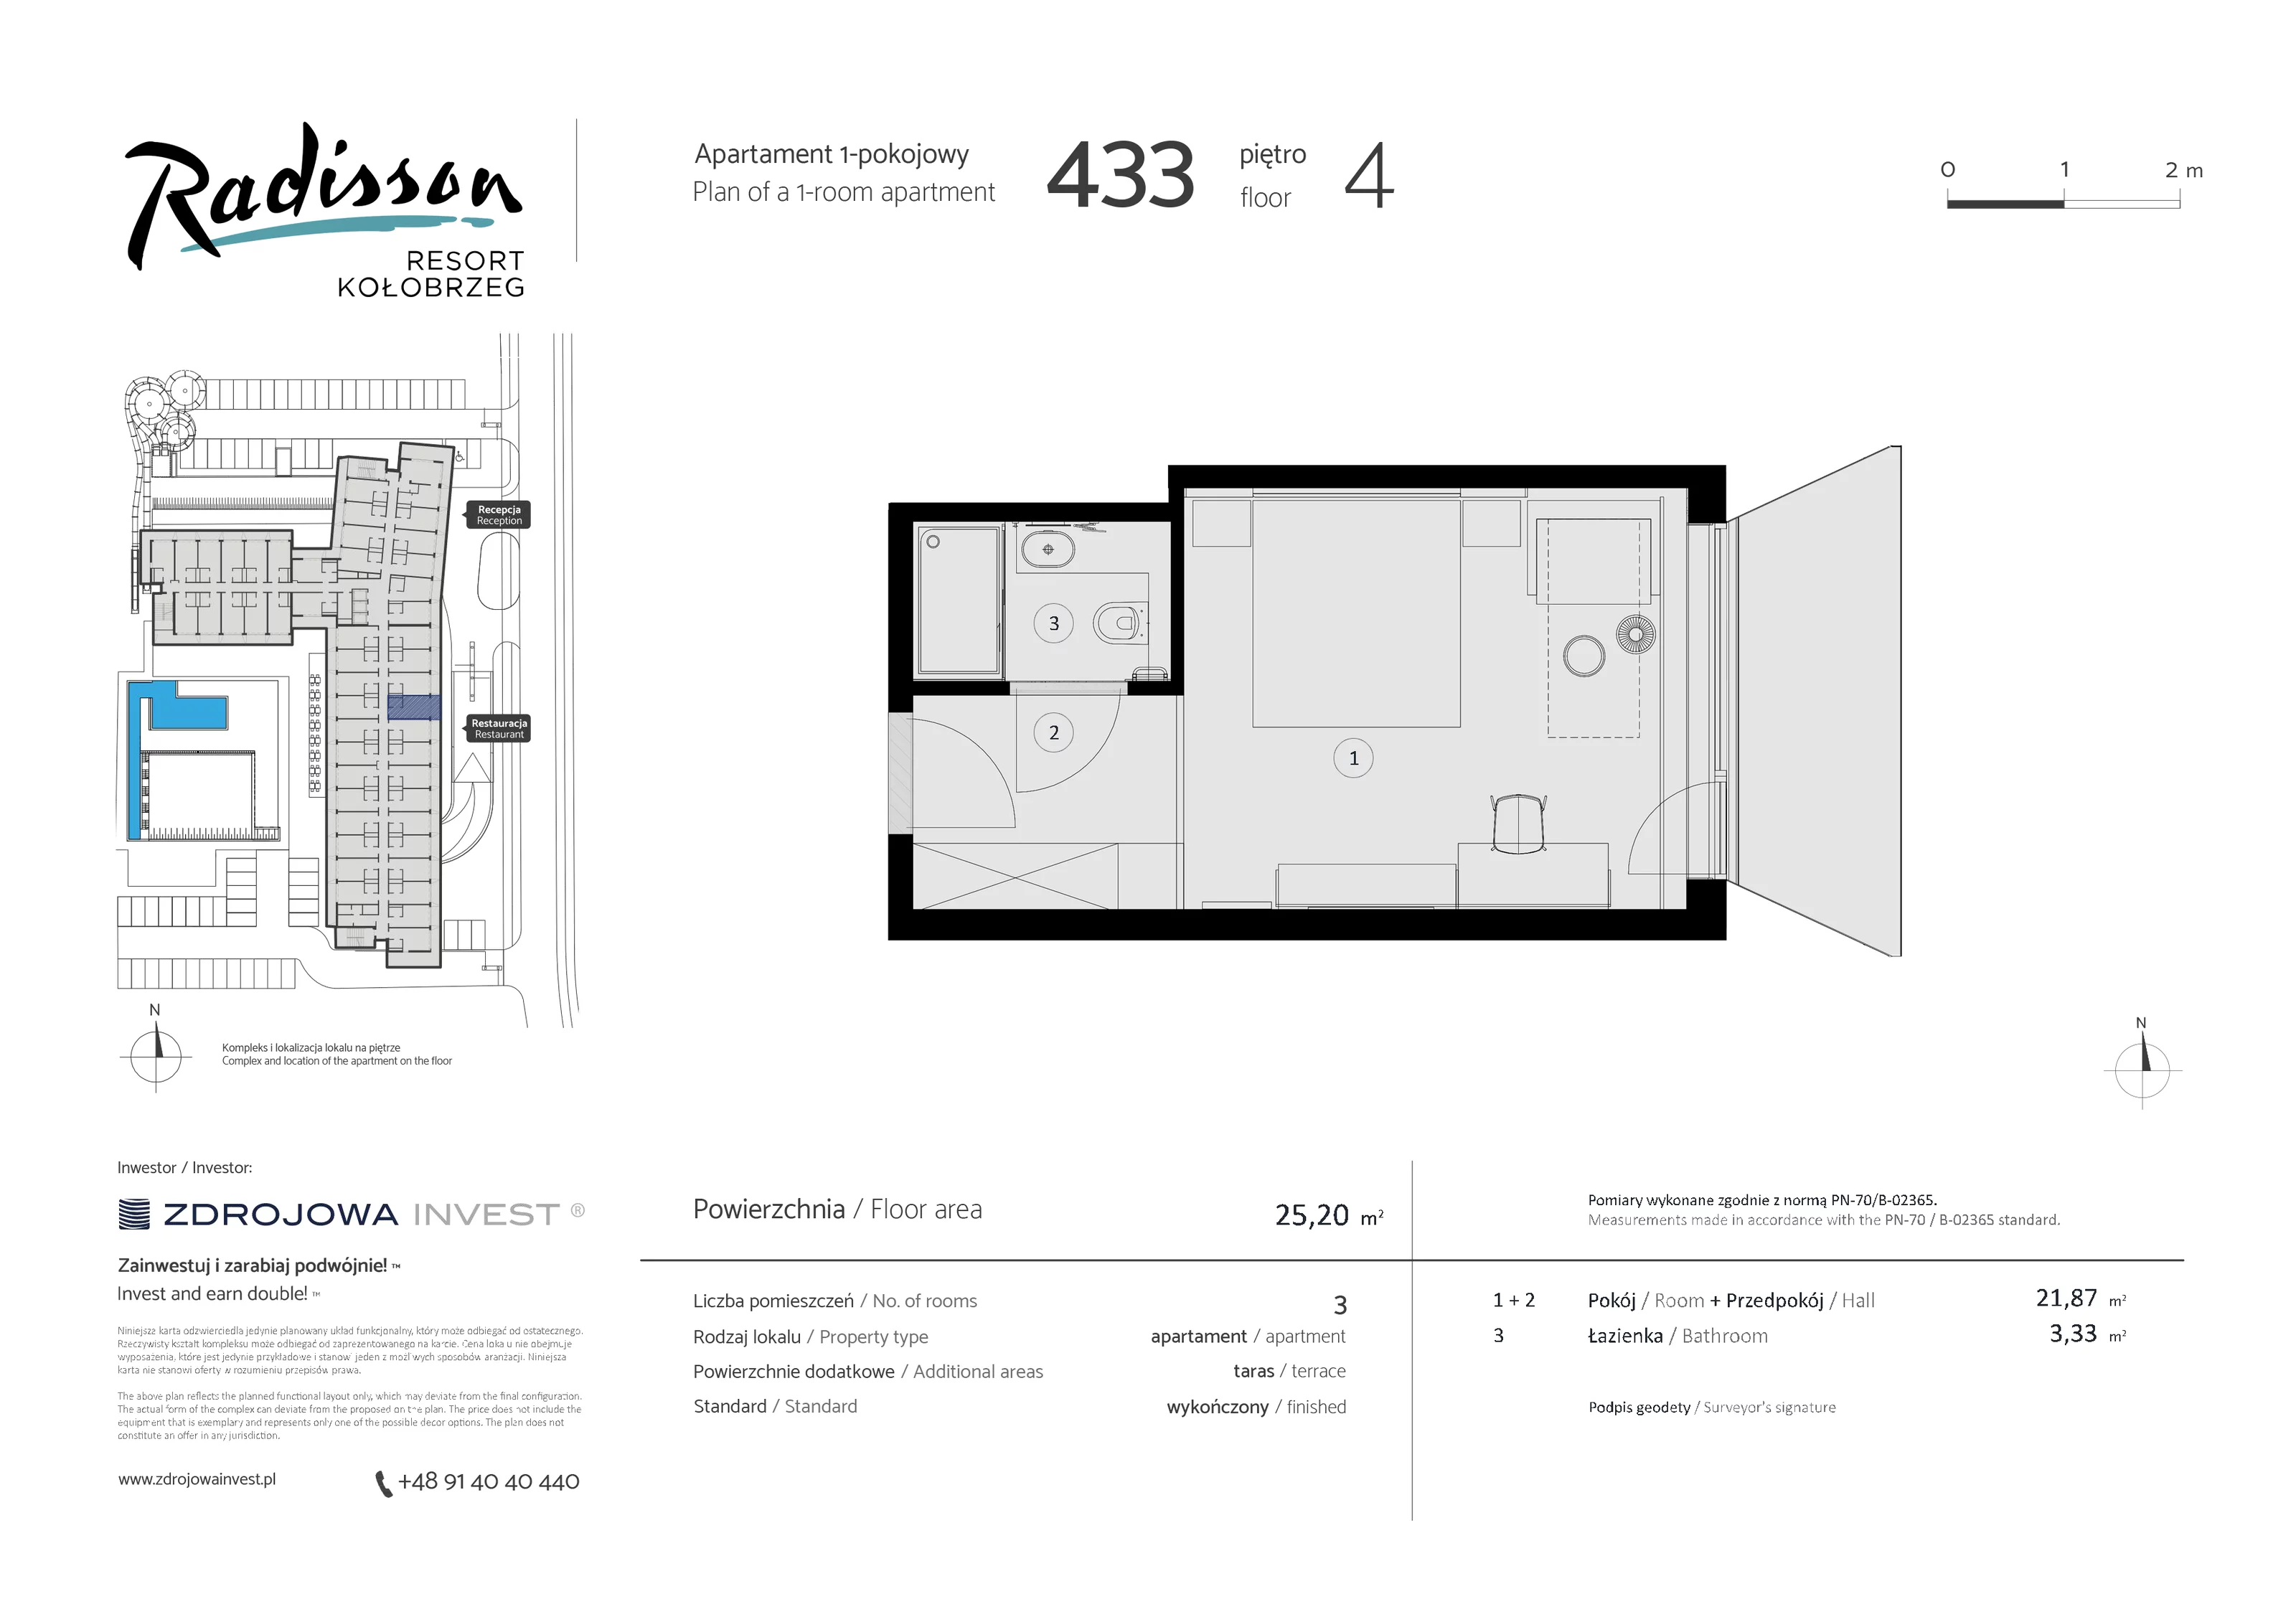 Apartament inwestycyjny 25,20 m², piętro 4, oferta nr 433, Radisson Resort Kołobrzeg, Kołobrzeg, ul. Morawskiego 10